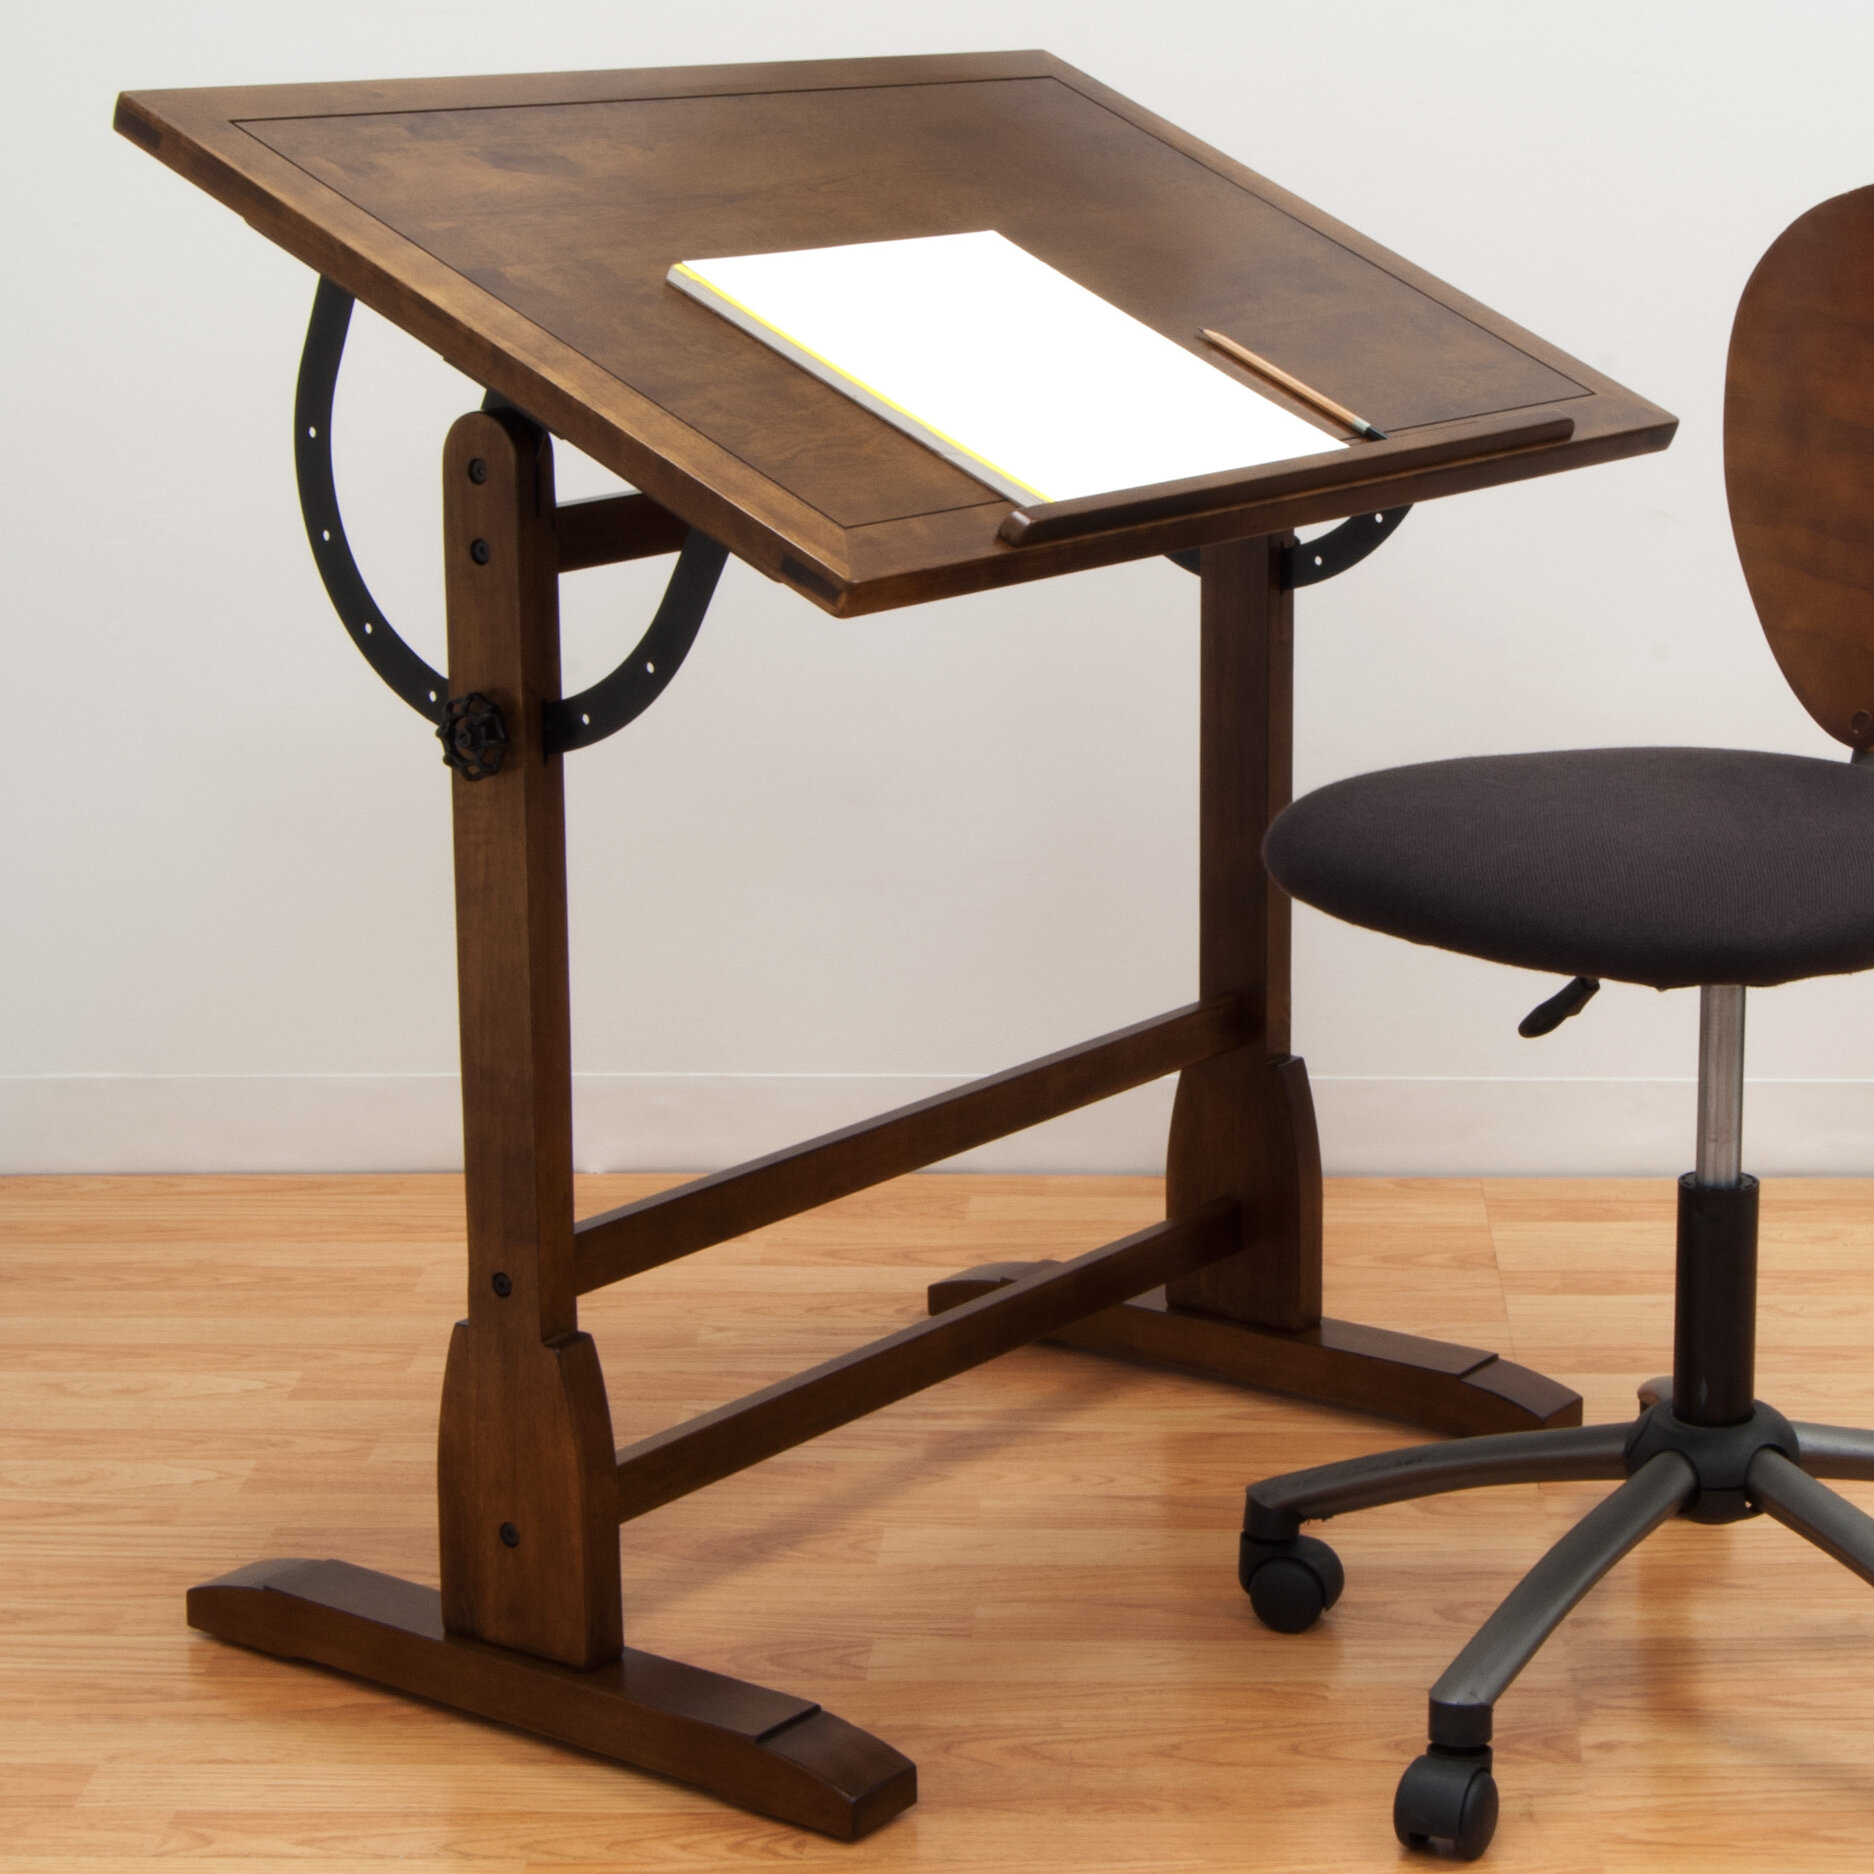 Studio Designs Solid Wood Drafting Table Reviews Wayfair